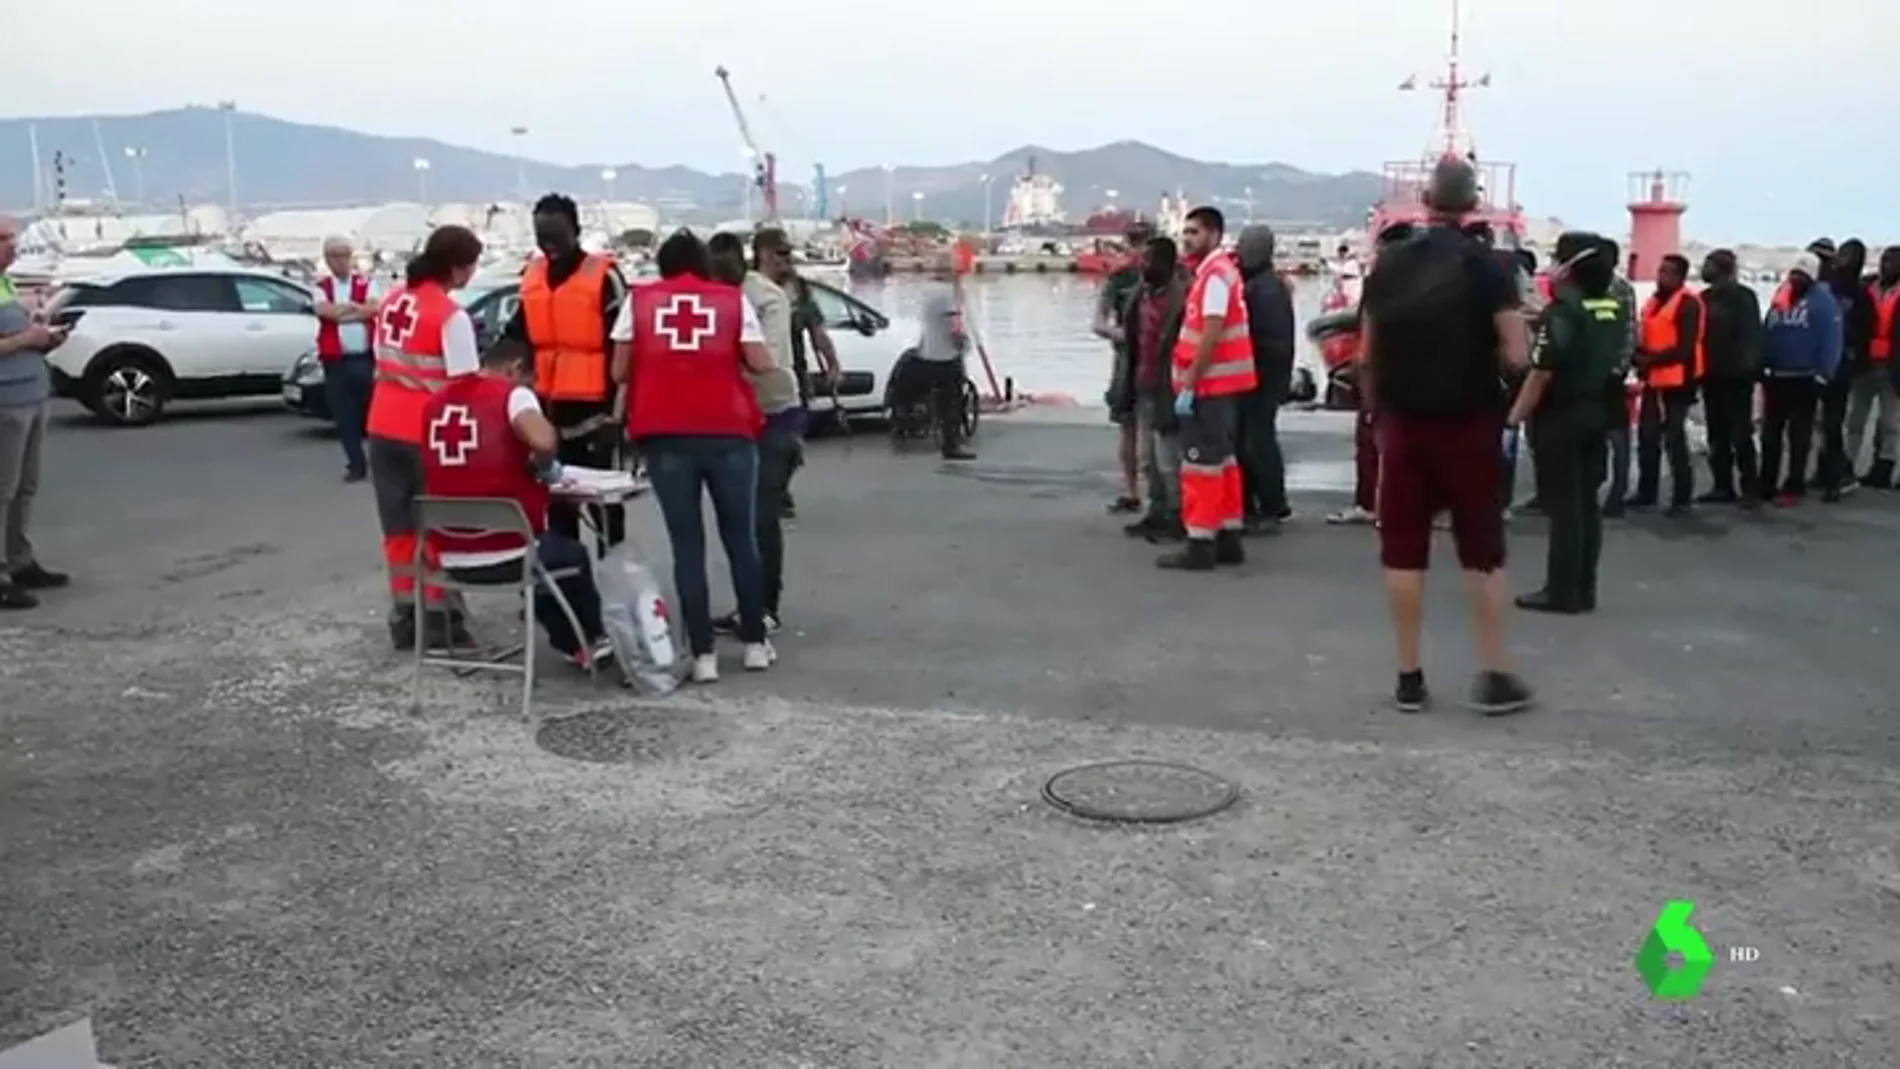 Salvamento marítimo rescata a 569 personas a bordo de 21 pateras